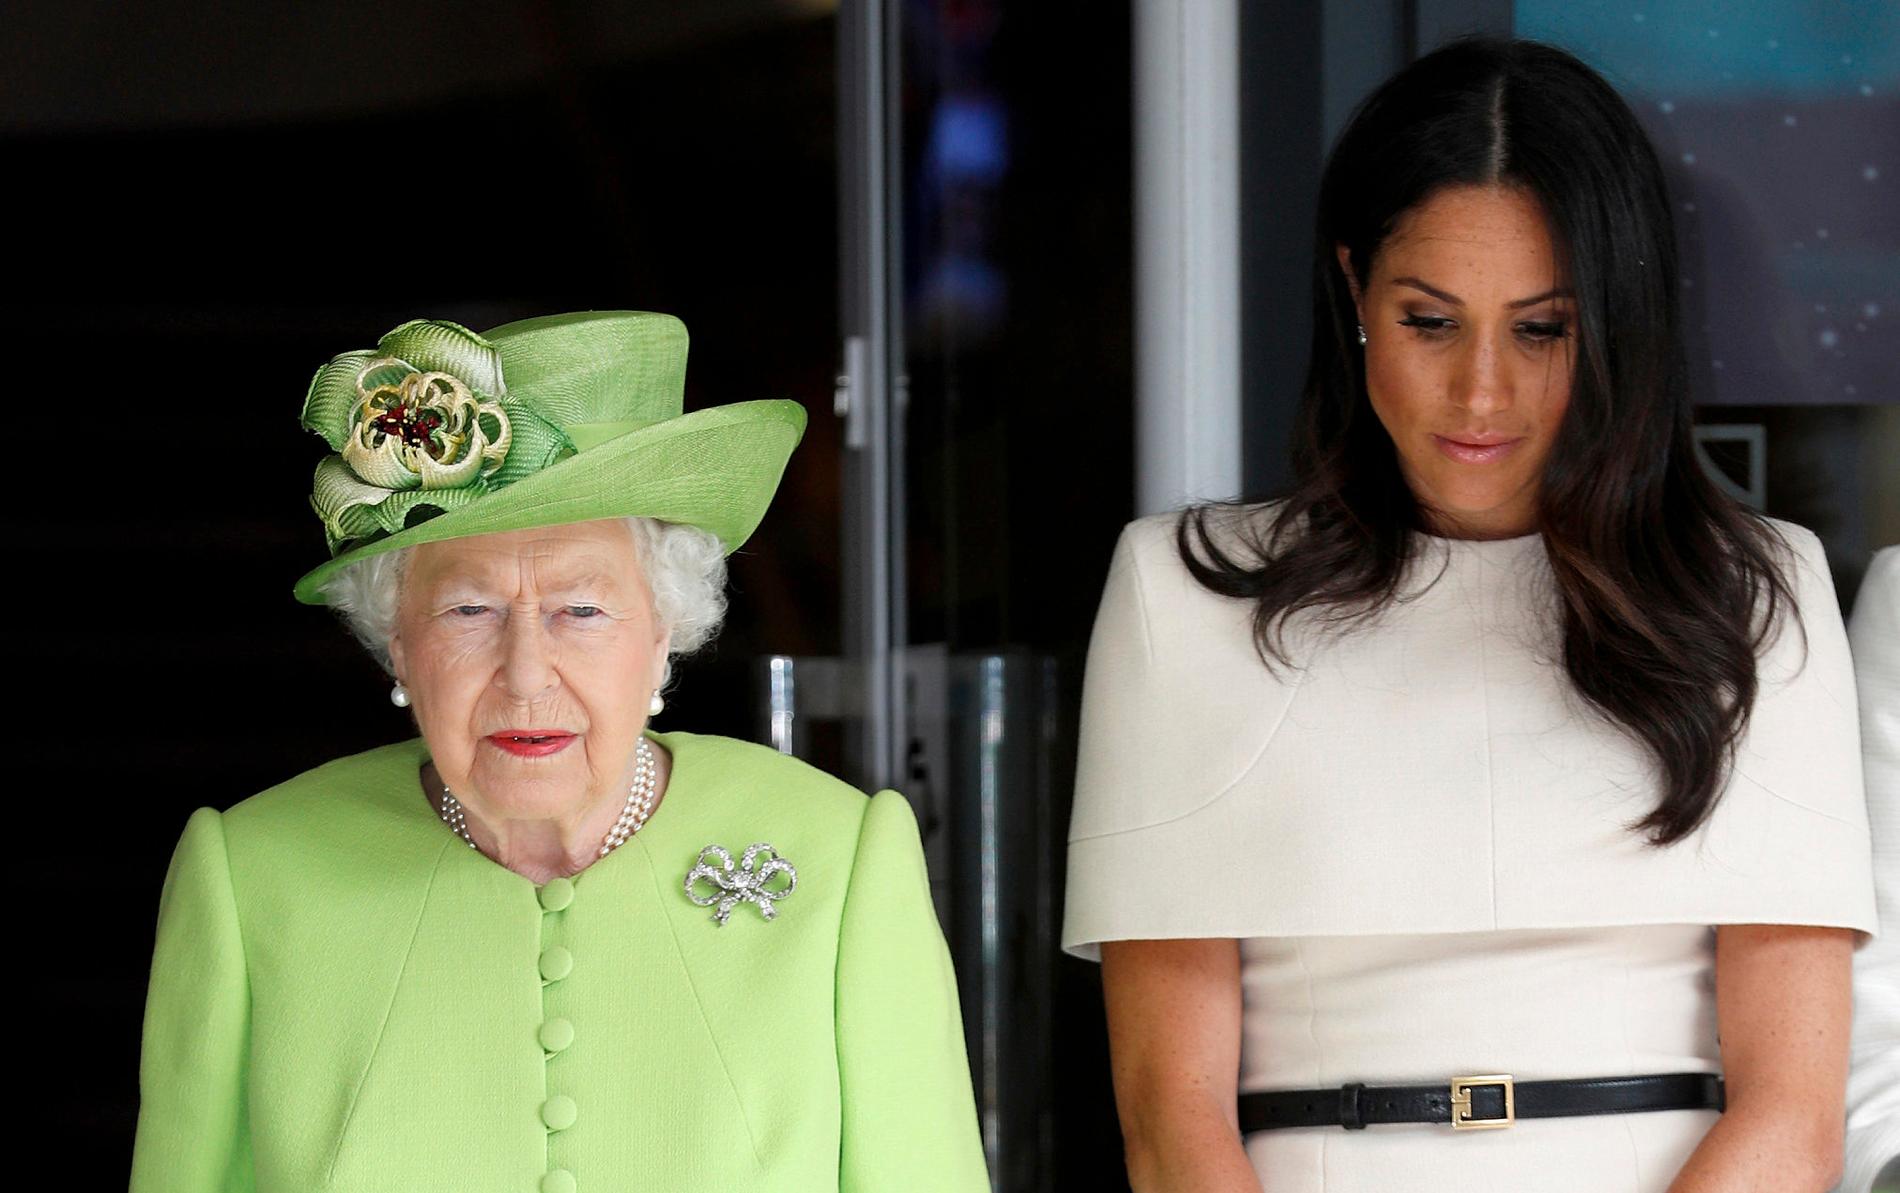 Drottning Elizabeth och Meghan Markle är inte överens om vilken kost den nya kungliga bebisen ska få.